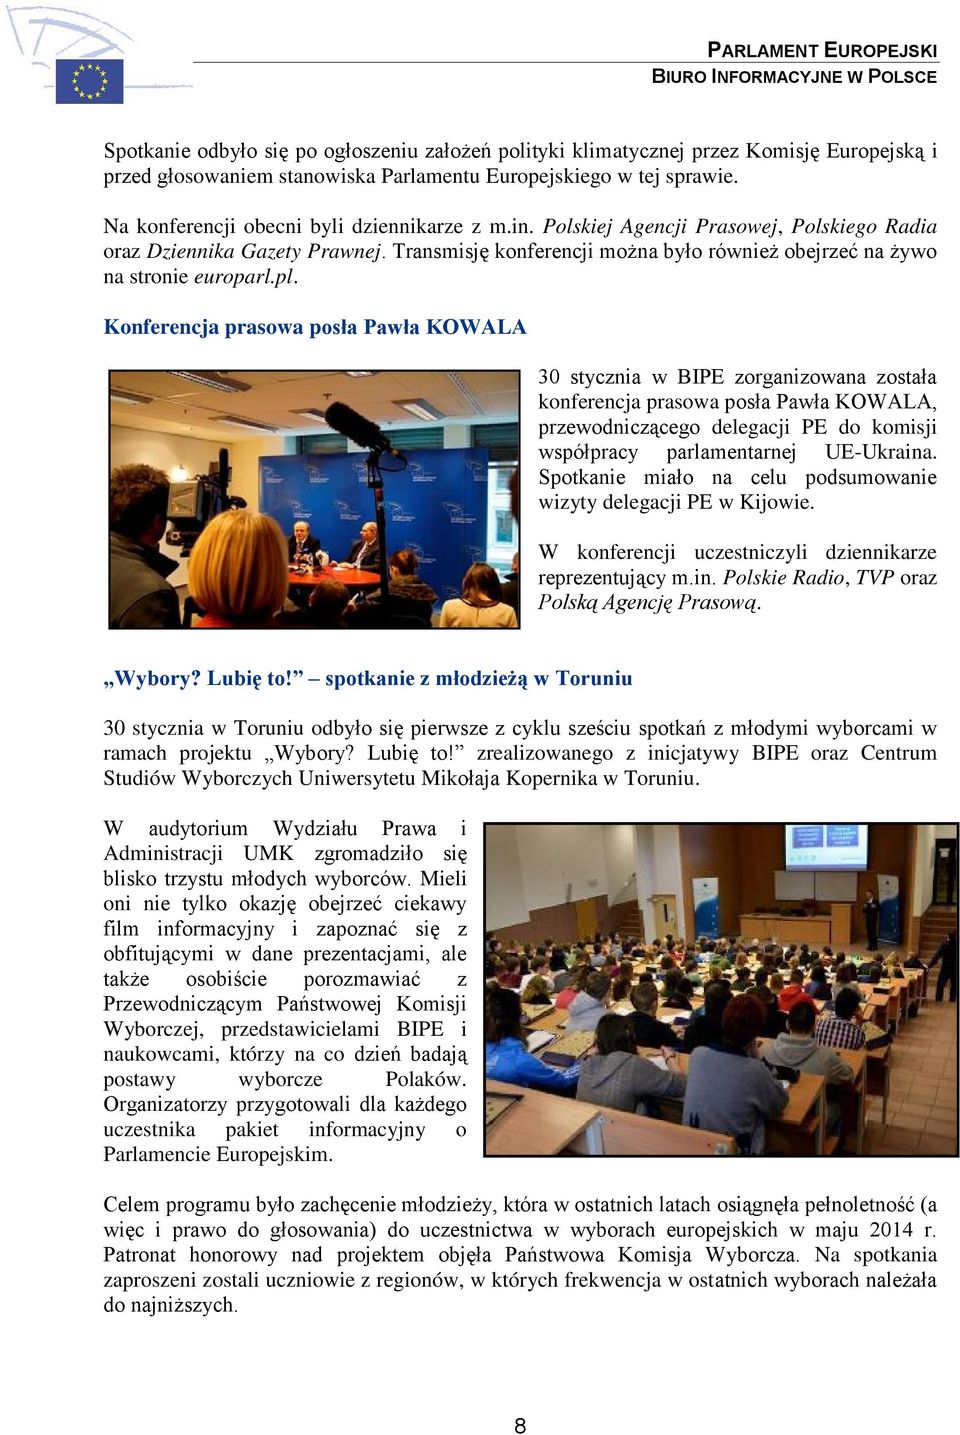 Transmisję konferencji można było również obejrzeć na żywo na stronie europarl.pl.